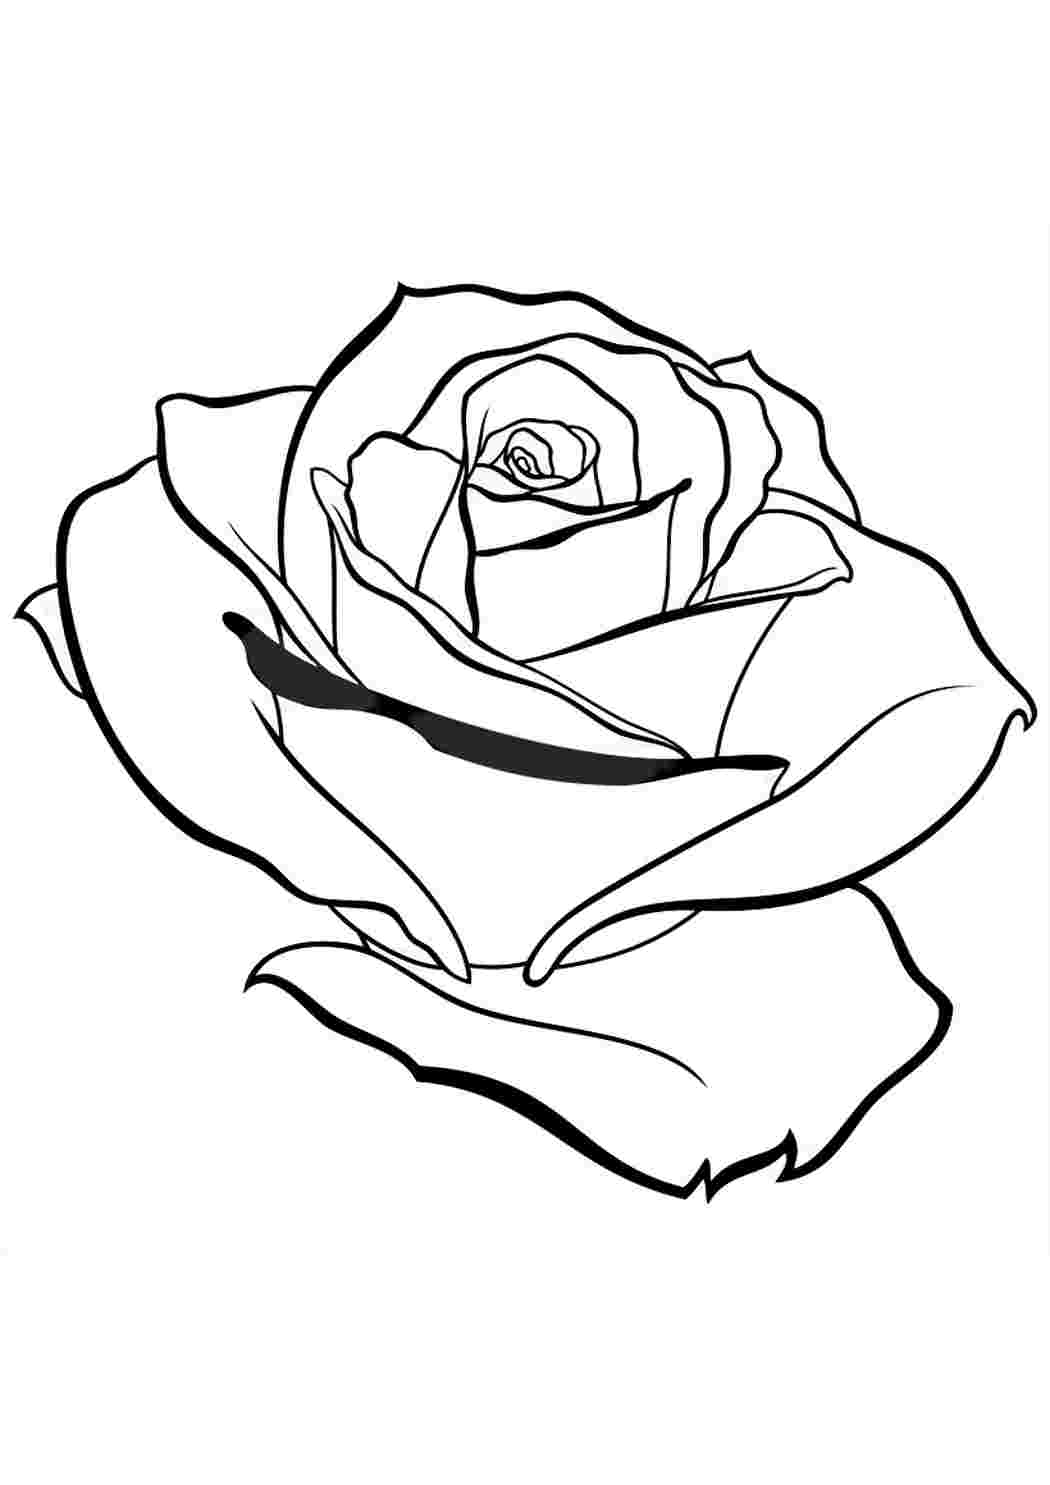 Роза раскраска реалистичная